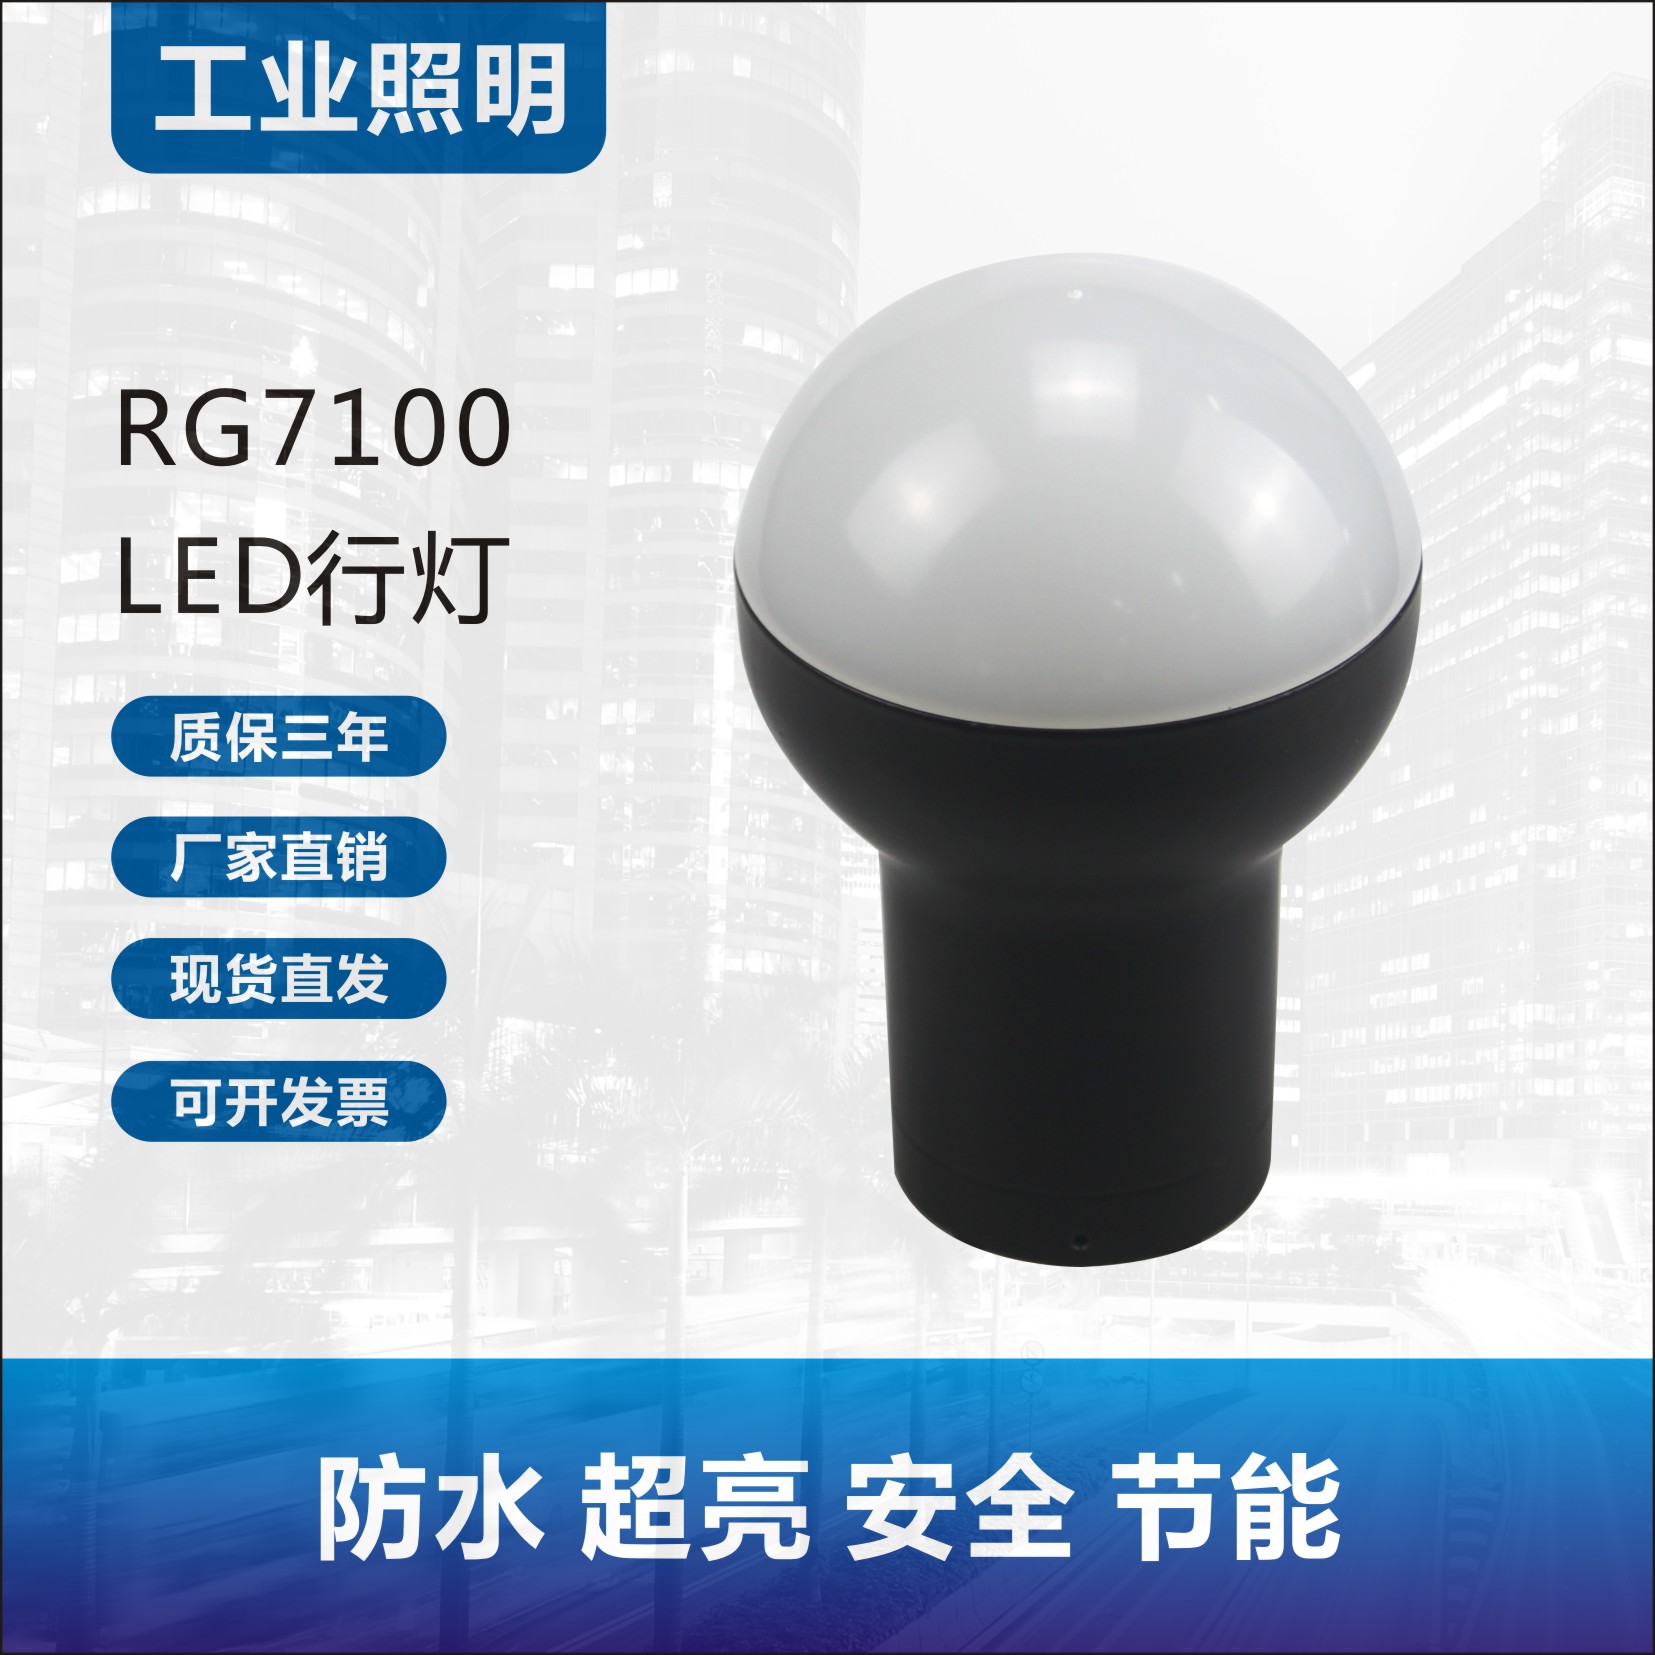 RG7100/LED防爆行灯